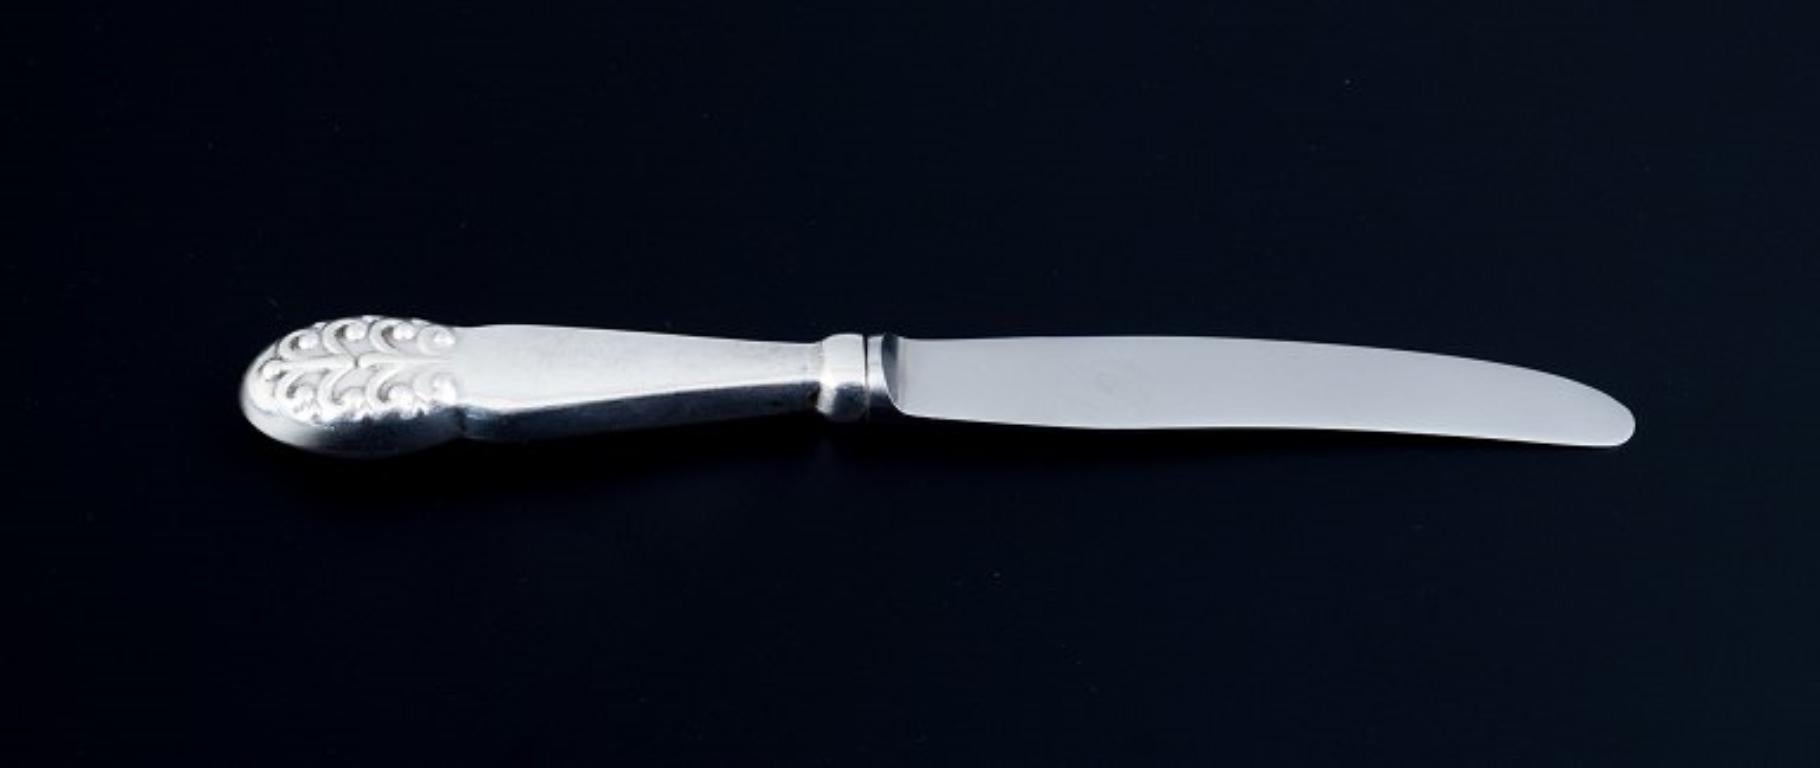 Orfèvre danois, un ensemble de douze couteaux à fruits.
Danois 830 argent.
Les années 1930-1940.
Parfait état.
Marqué.
Marque de fabrique : C.A.S. / CS & S
Dimensions : L 17.0 cm.